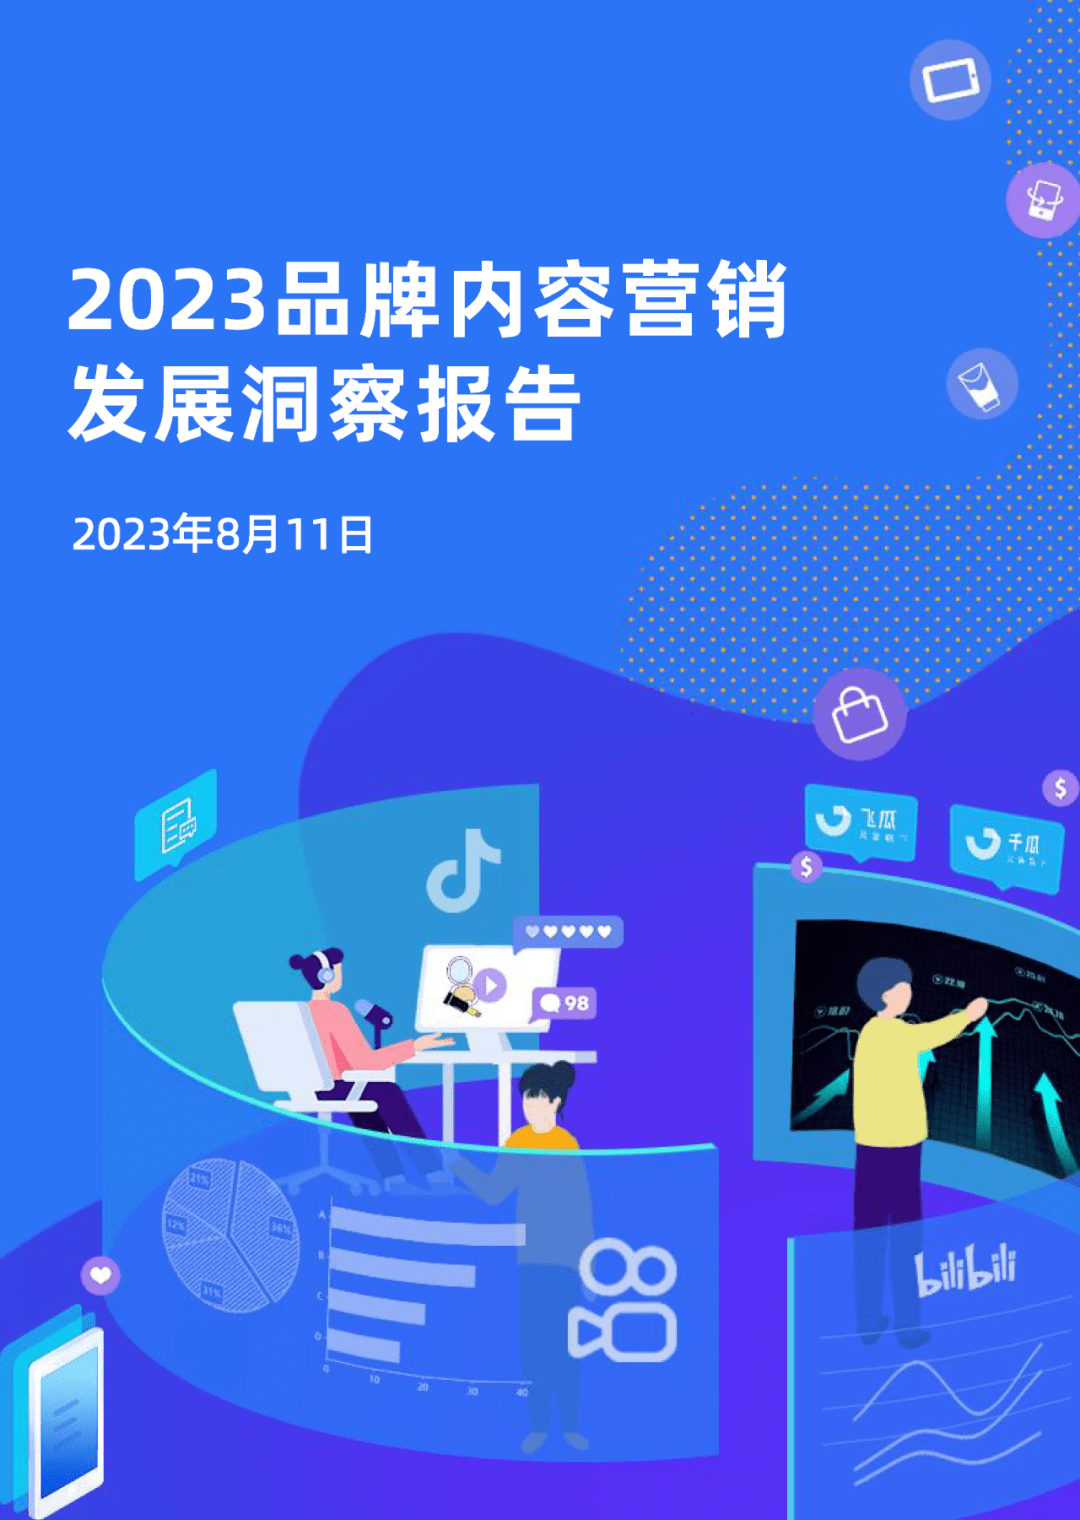 贵州百灵：营销模式改革纵深推进 2023年营收突破42亿元